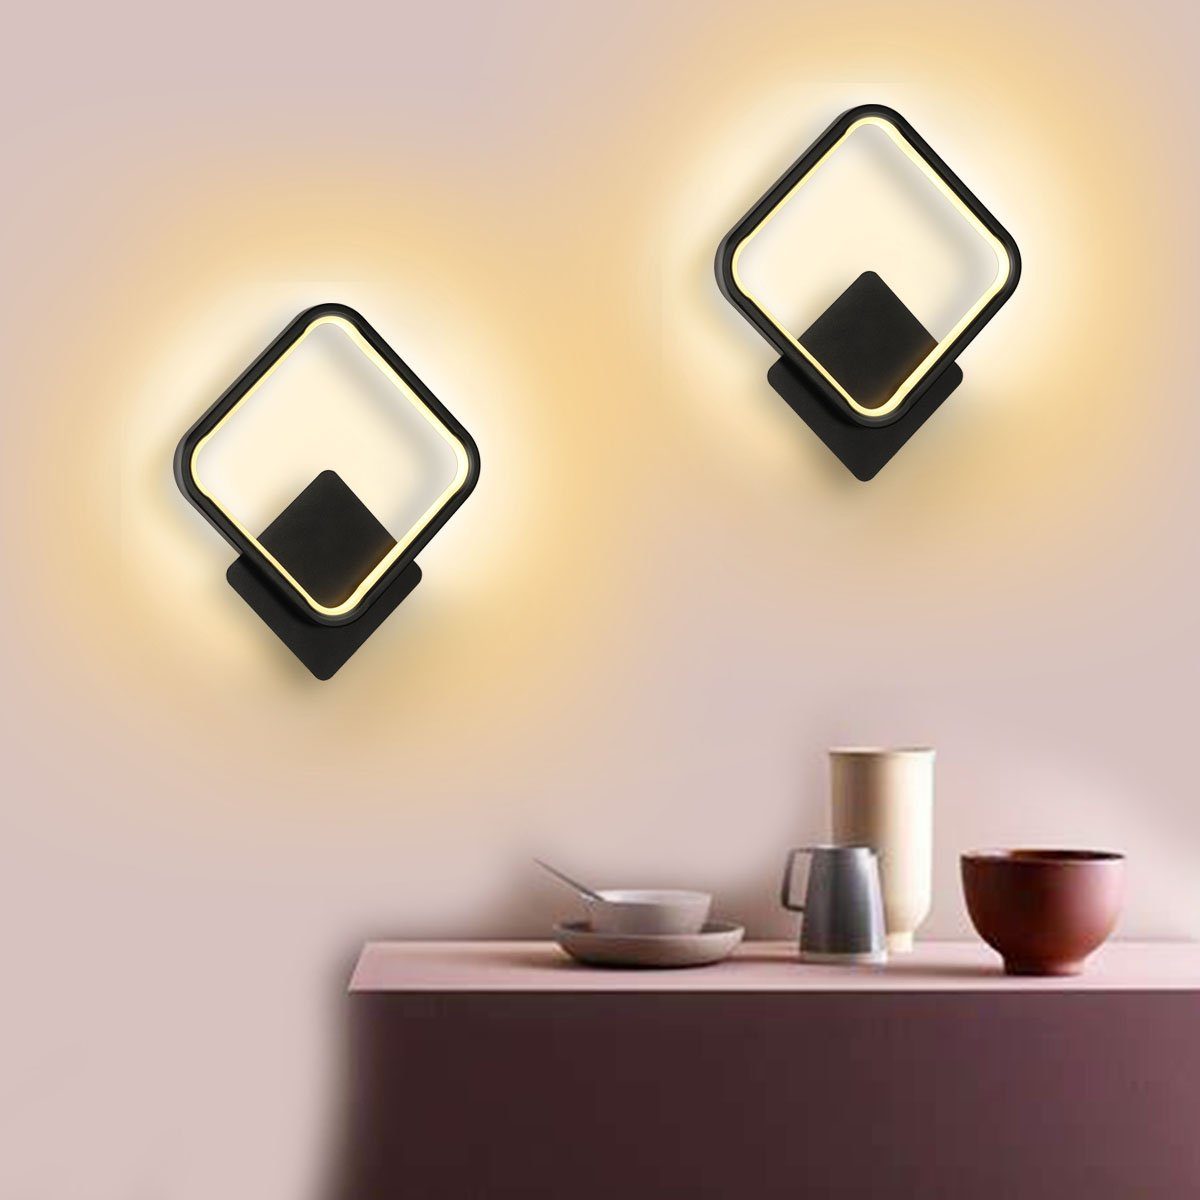 oyajia Wandleuchte 16W LED nordischen Wandleuchte integriert, für Wandbeleuchtung Küche im Stil, LED Schlafzimmer Wandleuchte Warmweiß, Wohnzimmer 2 Flur Wandleuchte Stück fest Innen